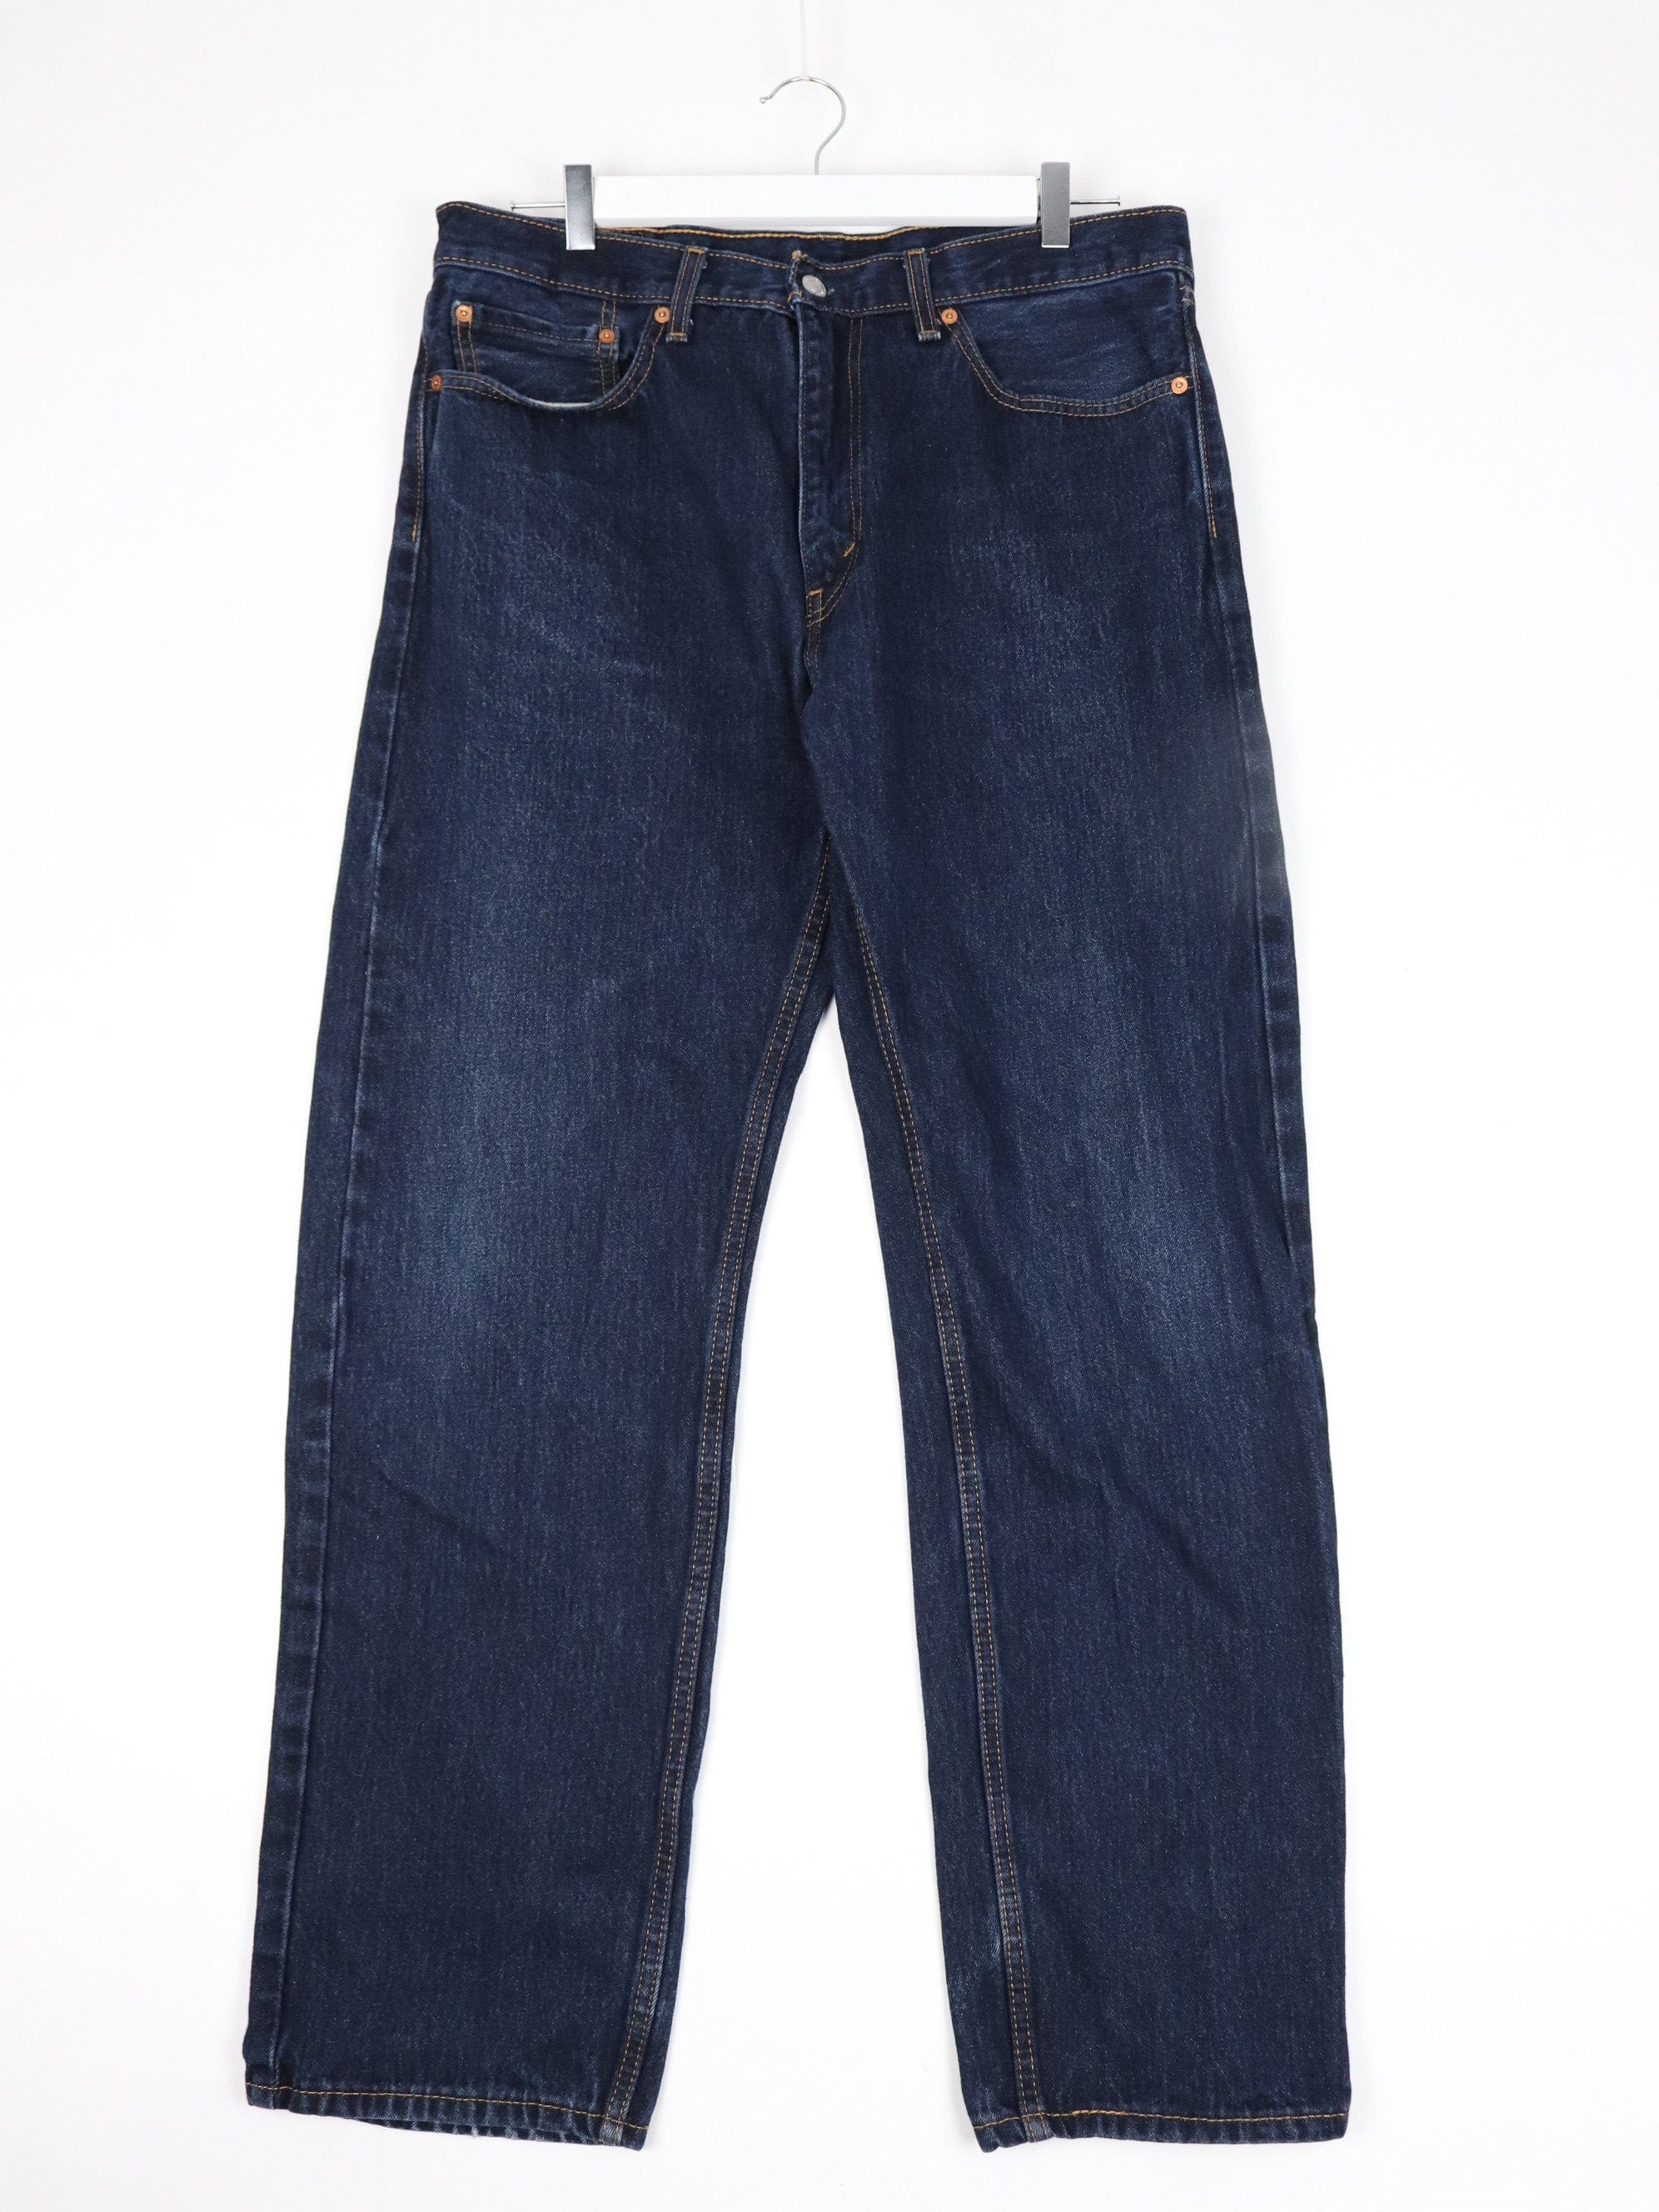 Men's Classic Fit Jeans, Shop by Fit